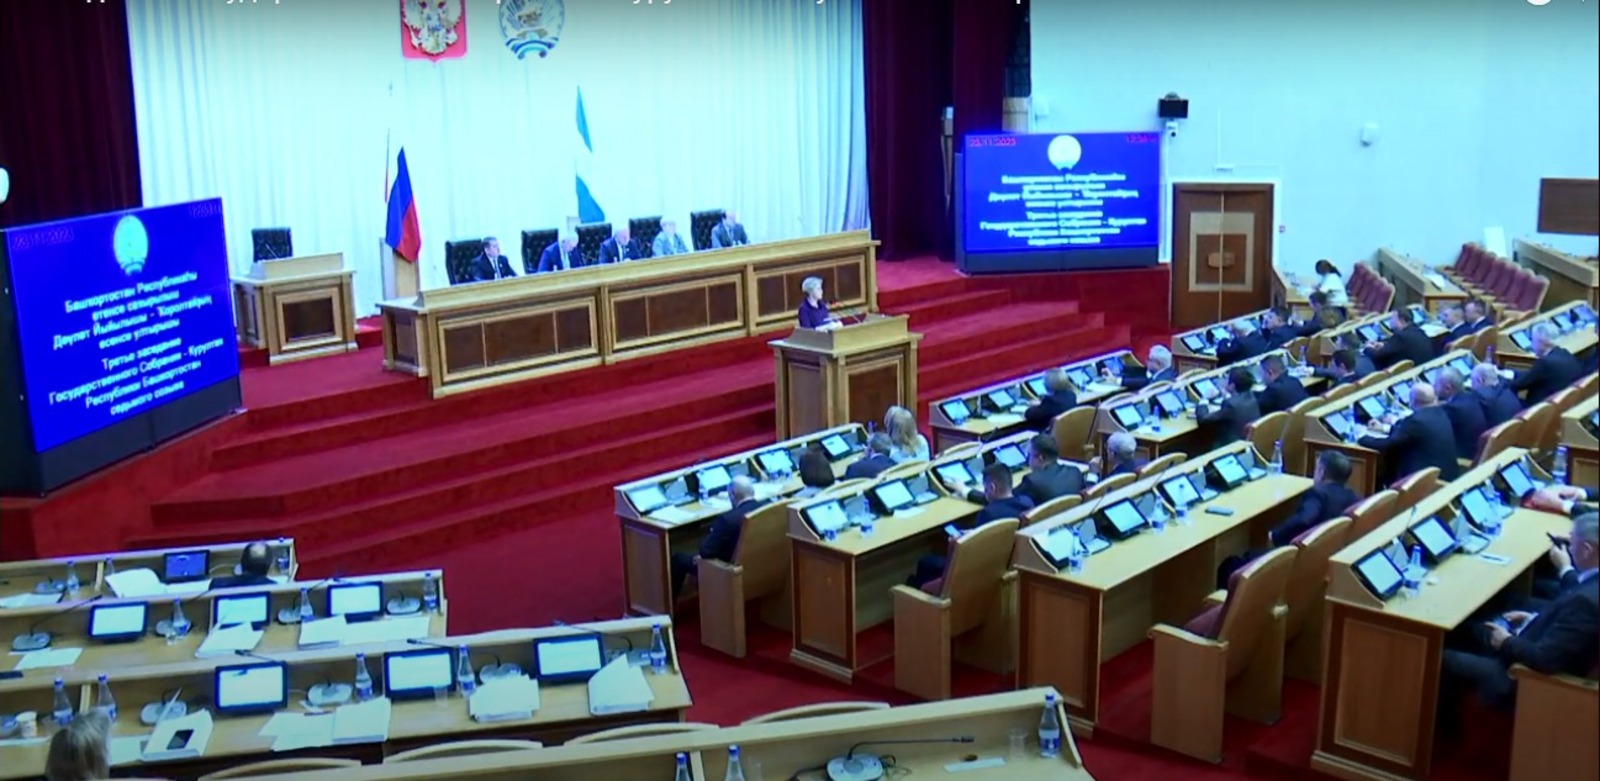 скриншот видео заседания Госсобрания - Курултая РБ.